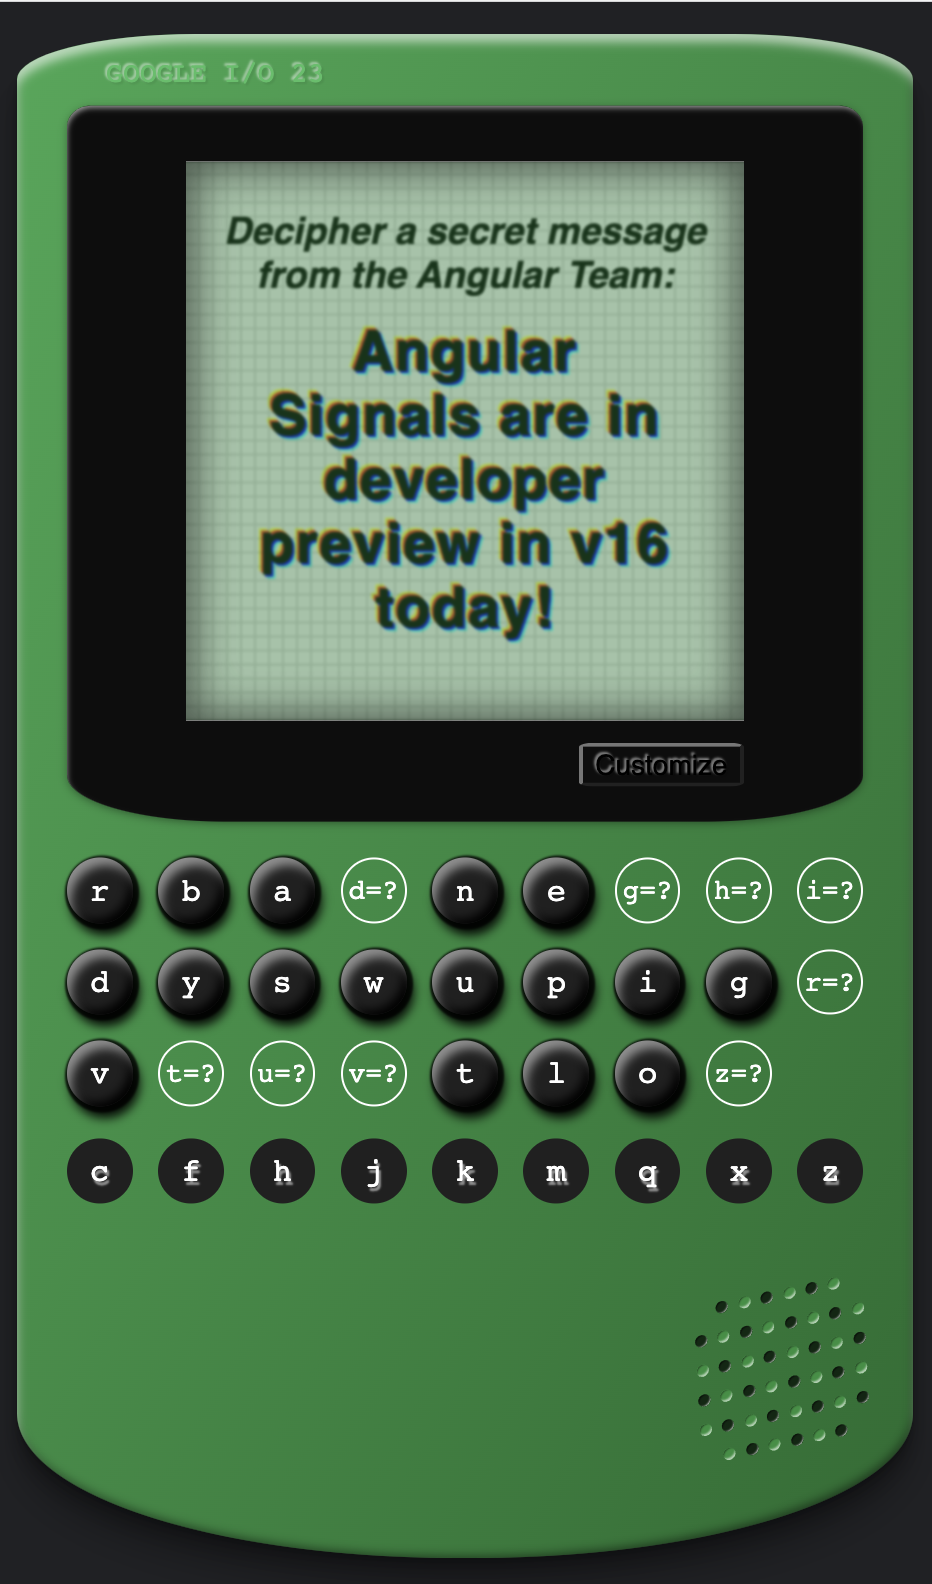 El juego de Angular Cypher se resolvió con un mensaje oculto en la pantalla que indica que Angular Signals está en la vista previa para desarrolladores en la versión 16 hoy.